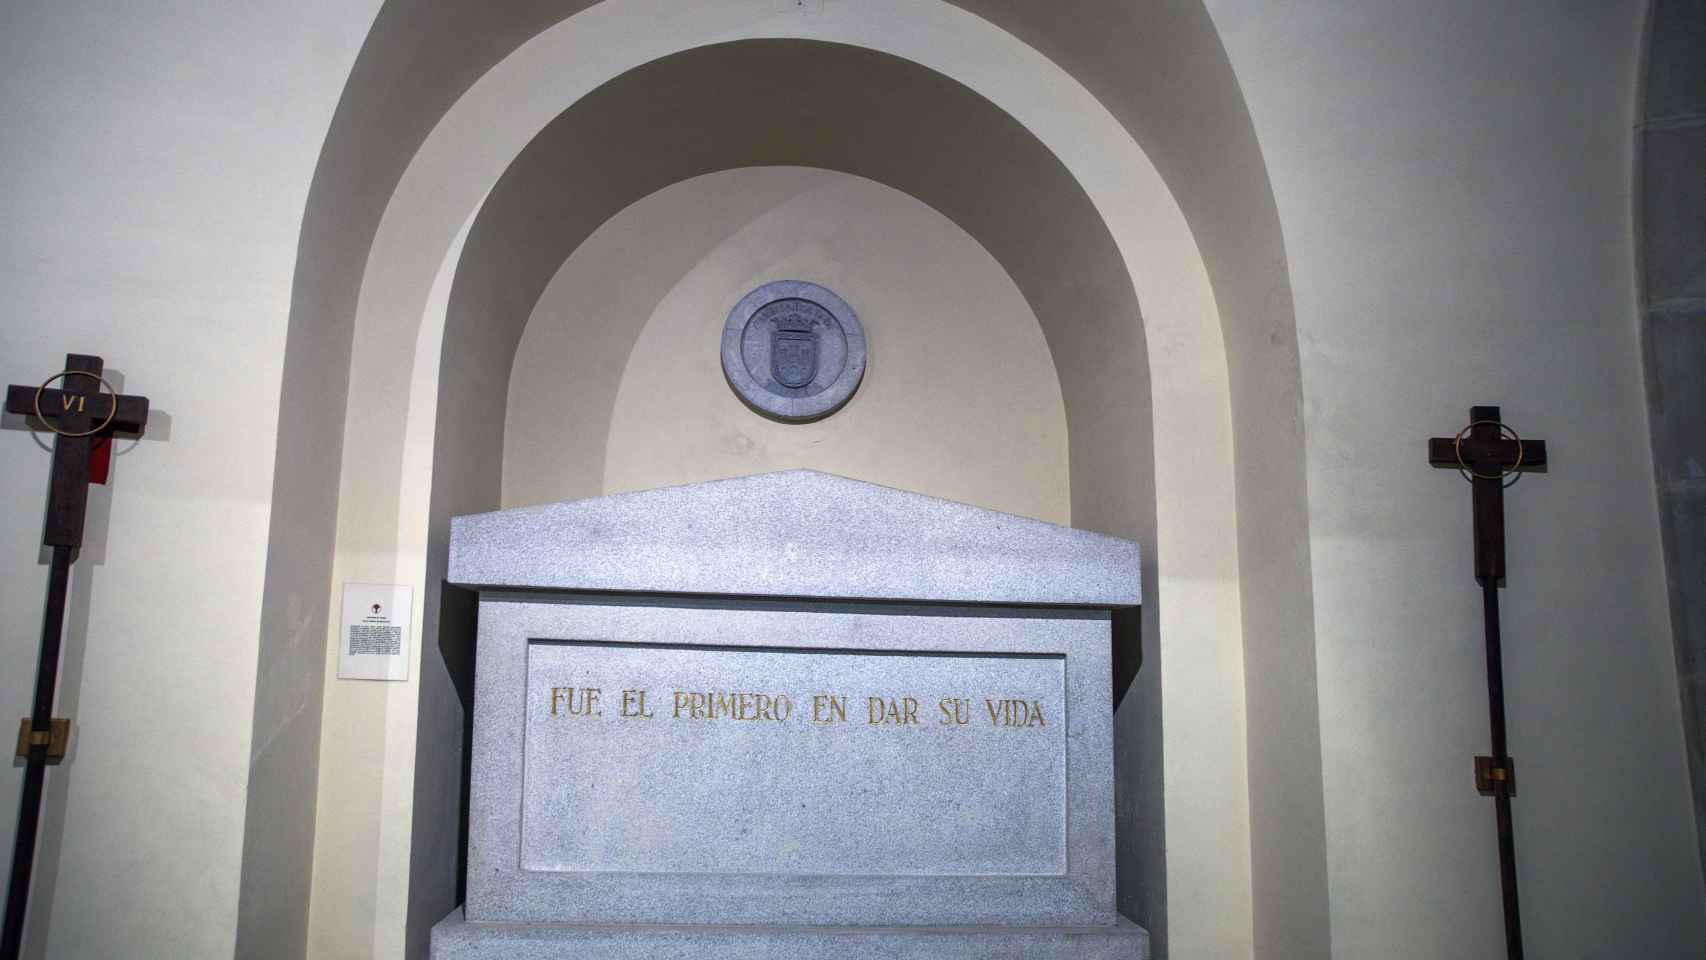 “Fue el primero en dar su vida”, se lee en la tumba en la que yace Jaime Munárriz.